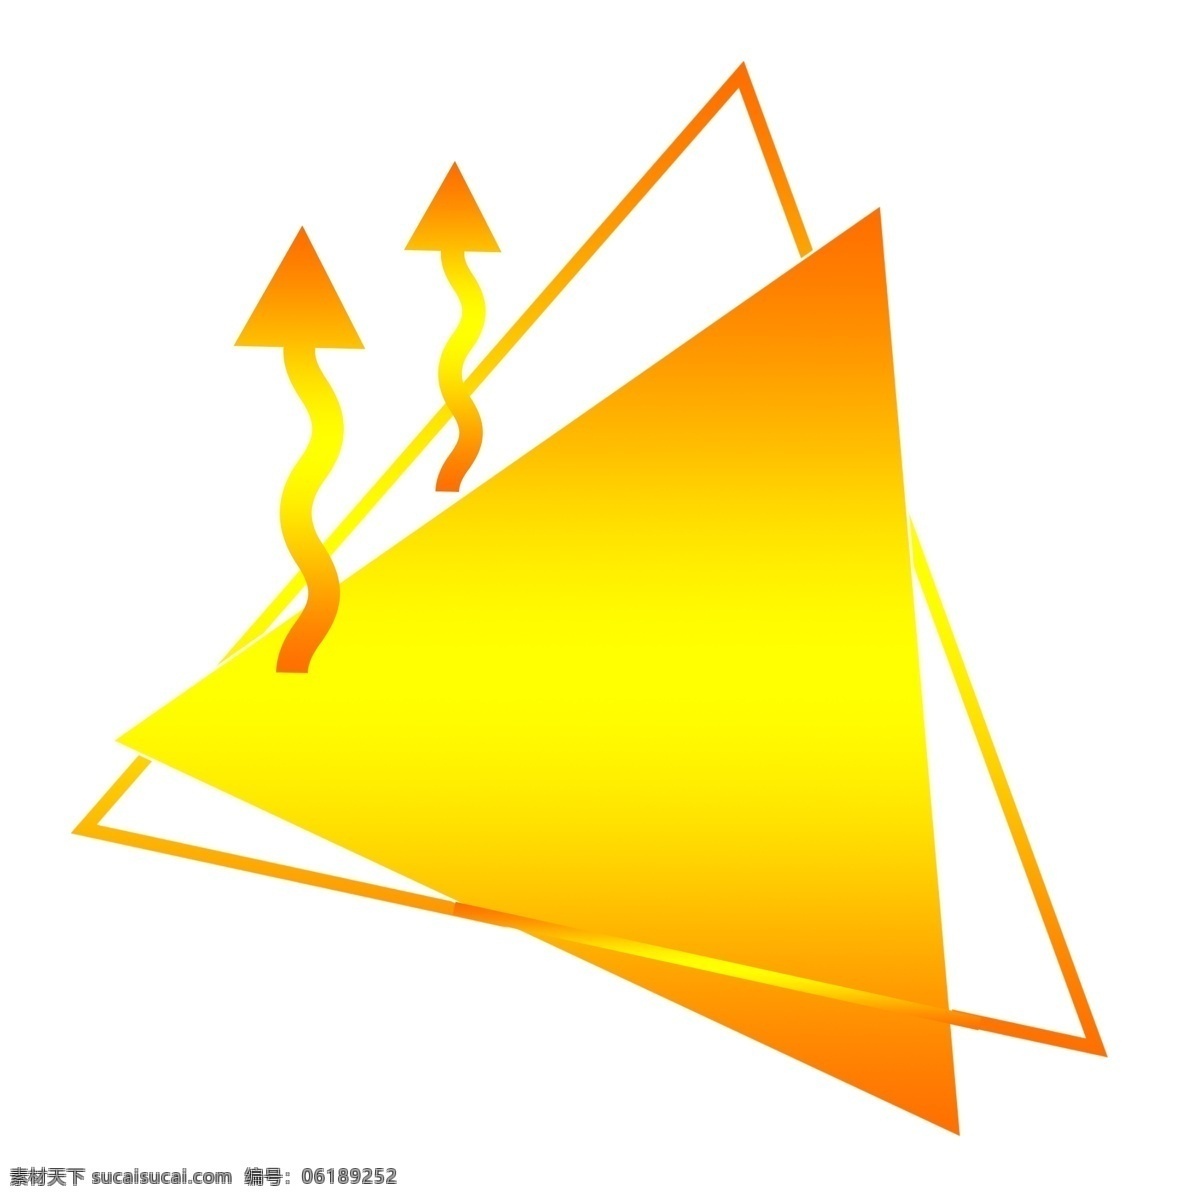 纹理 渐变 橙黄色 三角形 卡通 装饰 边框 商用 边框素材 可商用